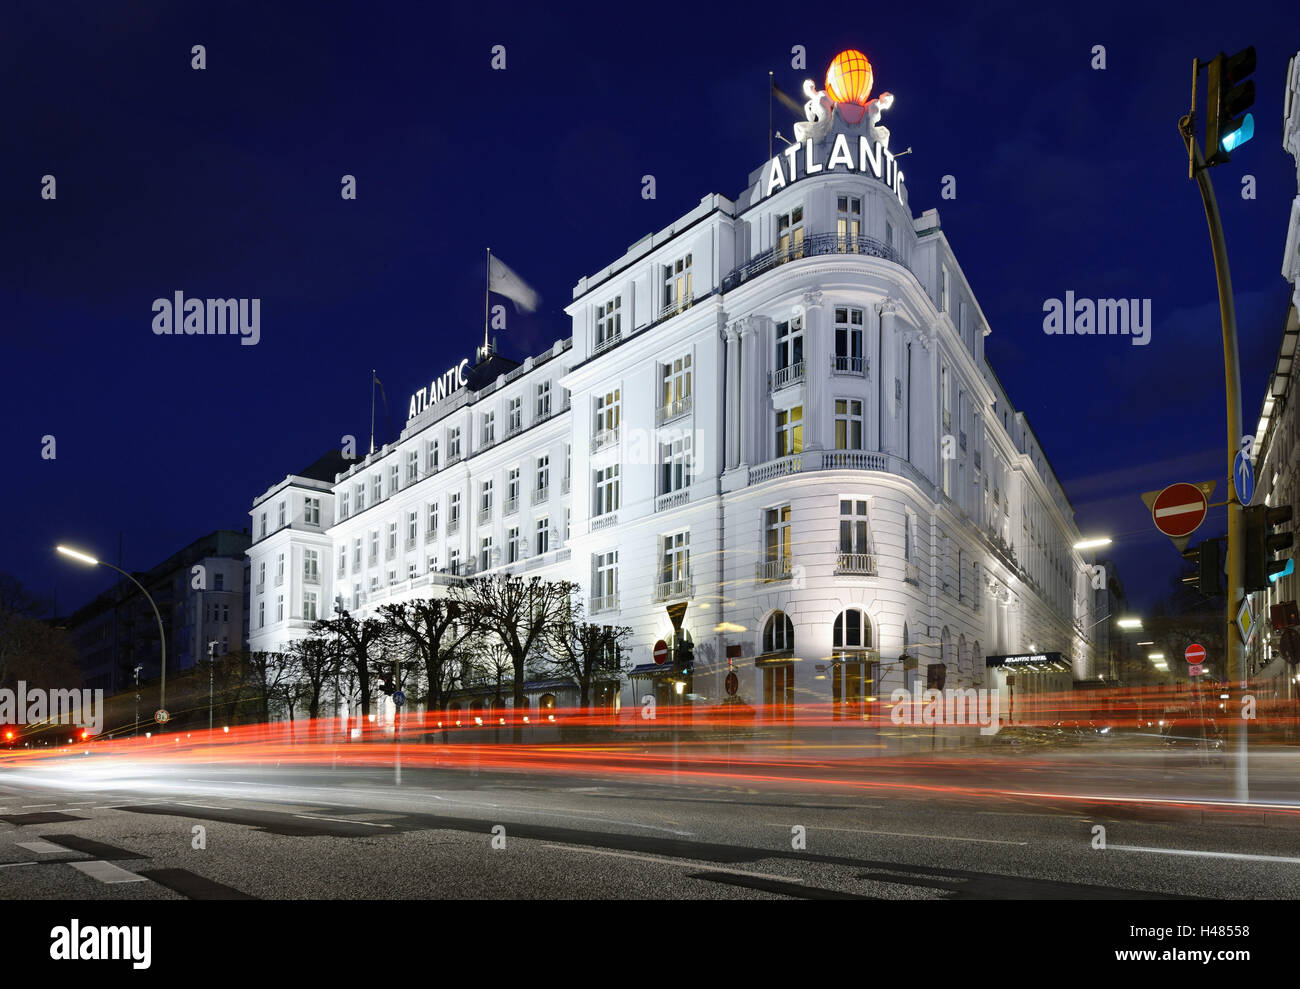 Prächtige Fassade des Grandhotel Atlantic, St. Georg, Hamburg, Deutschland Stockfoto